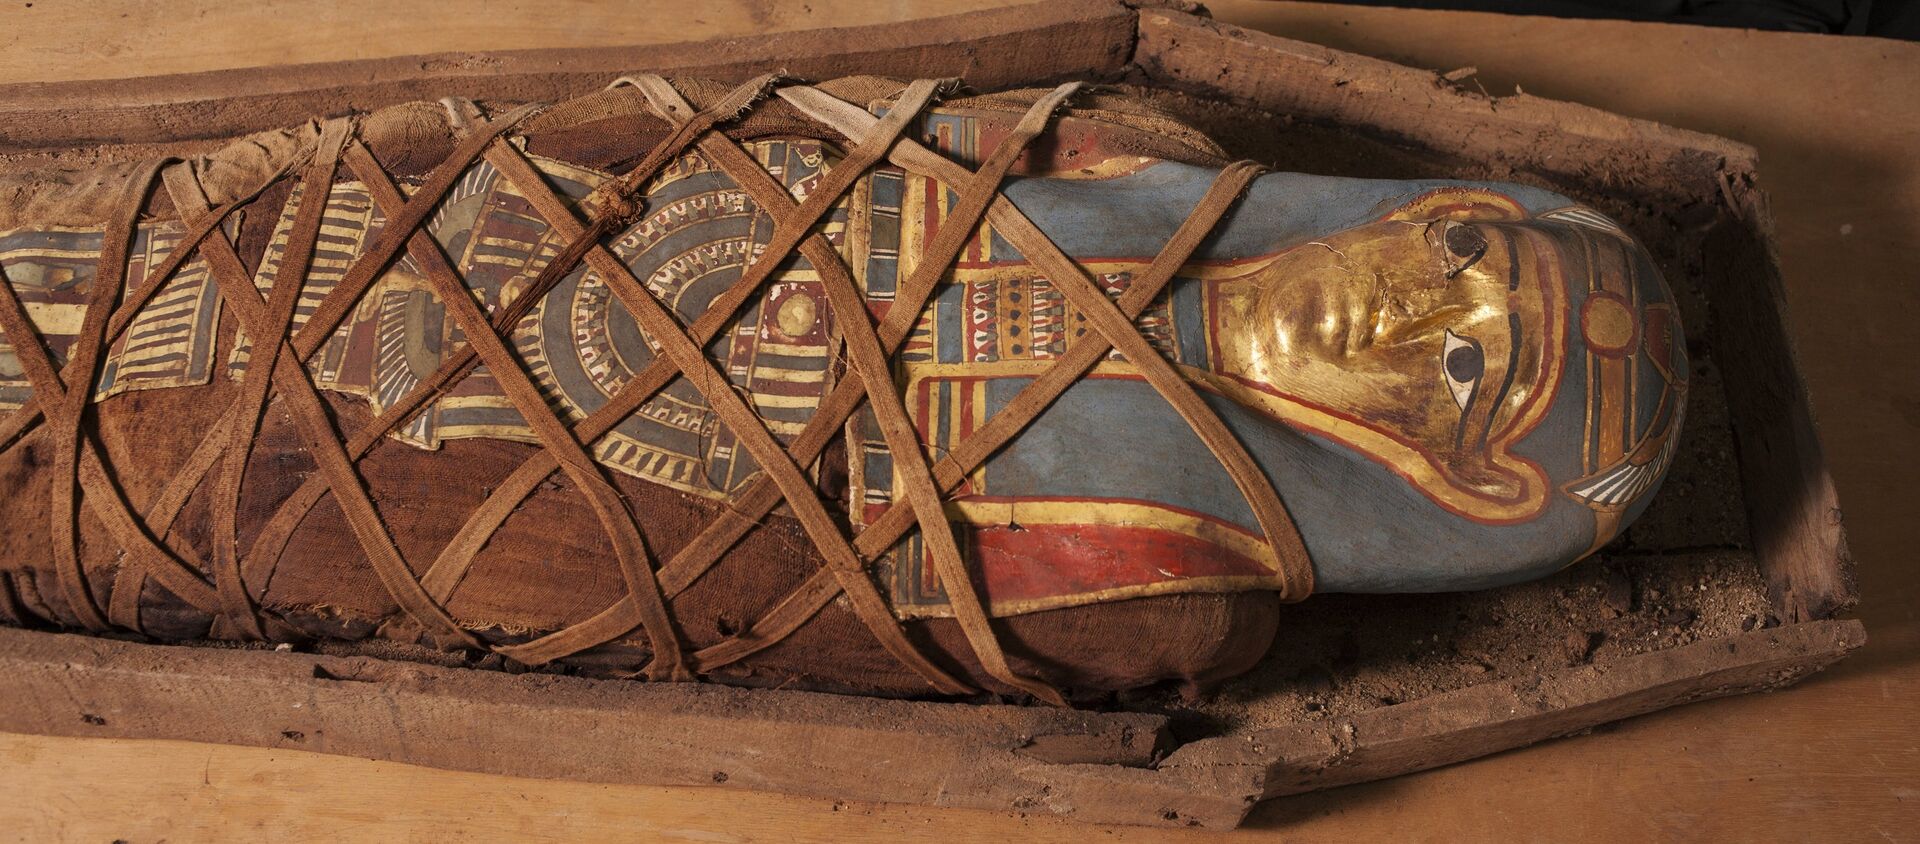 La momia descubierta en el oasis de El Fayum, Egipto - Sputnik Mundo, 1920, 30.11.2020